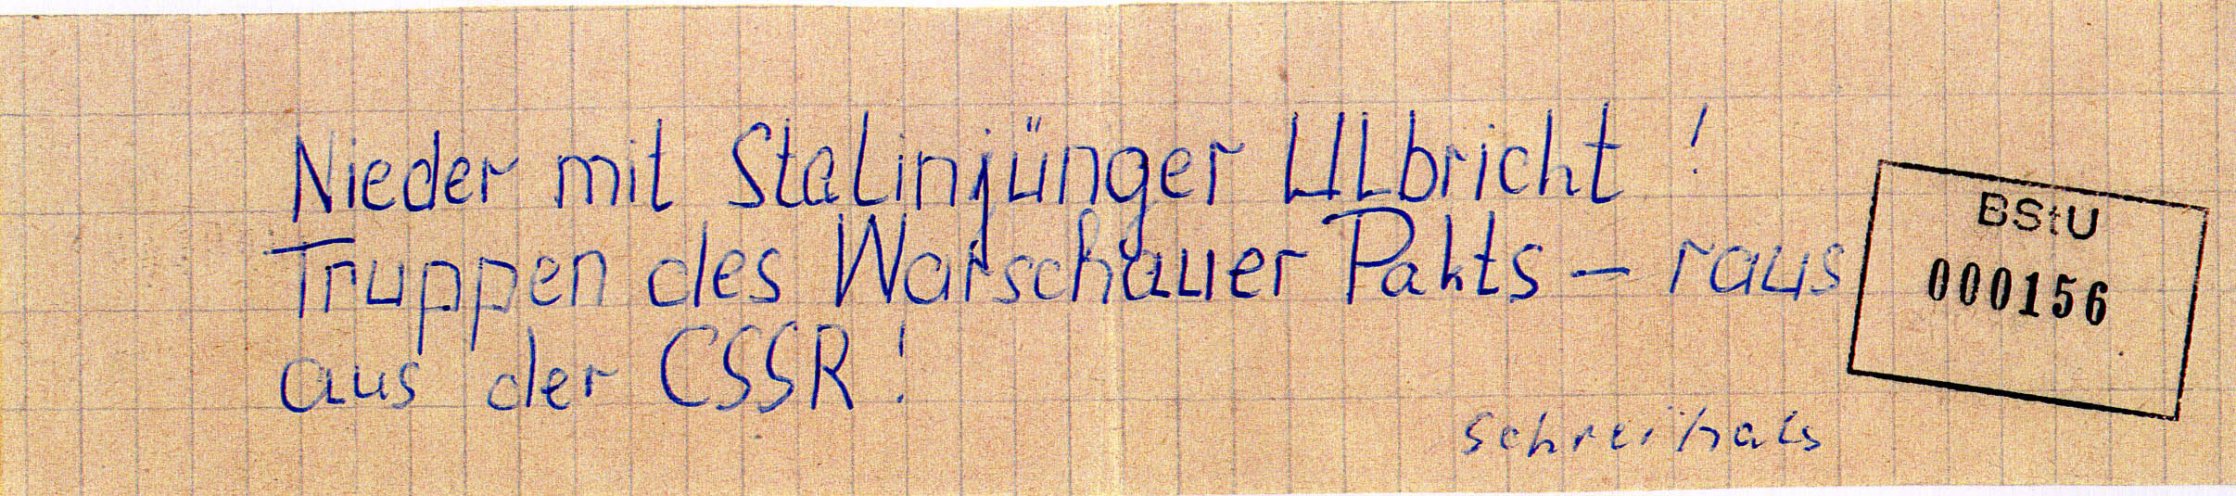 In Schwerin schreibt ein 21-jähriger Flugblätter gegen den Einmarsch der Warschauer-Pakt-Truppen in die CSSR und verteilt diese in Hausbriefkästen in seiner Wohngegend. Quelle: BStU, MfS, BV Schwerin, AU 11/69, GA Bd. 3, Bl. 156, Seite 10 von 10